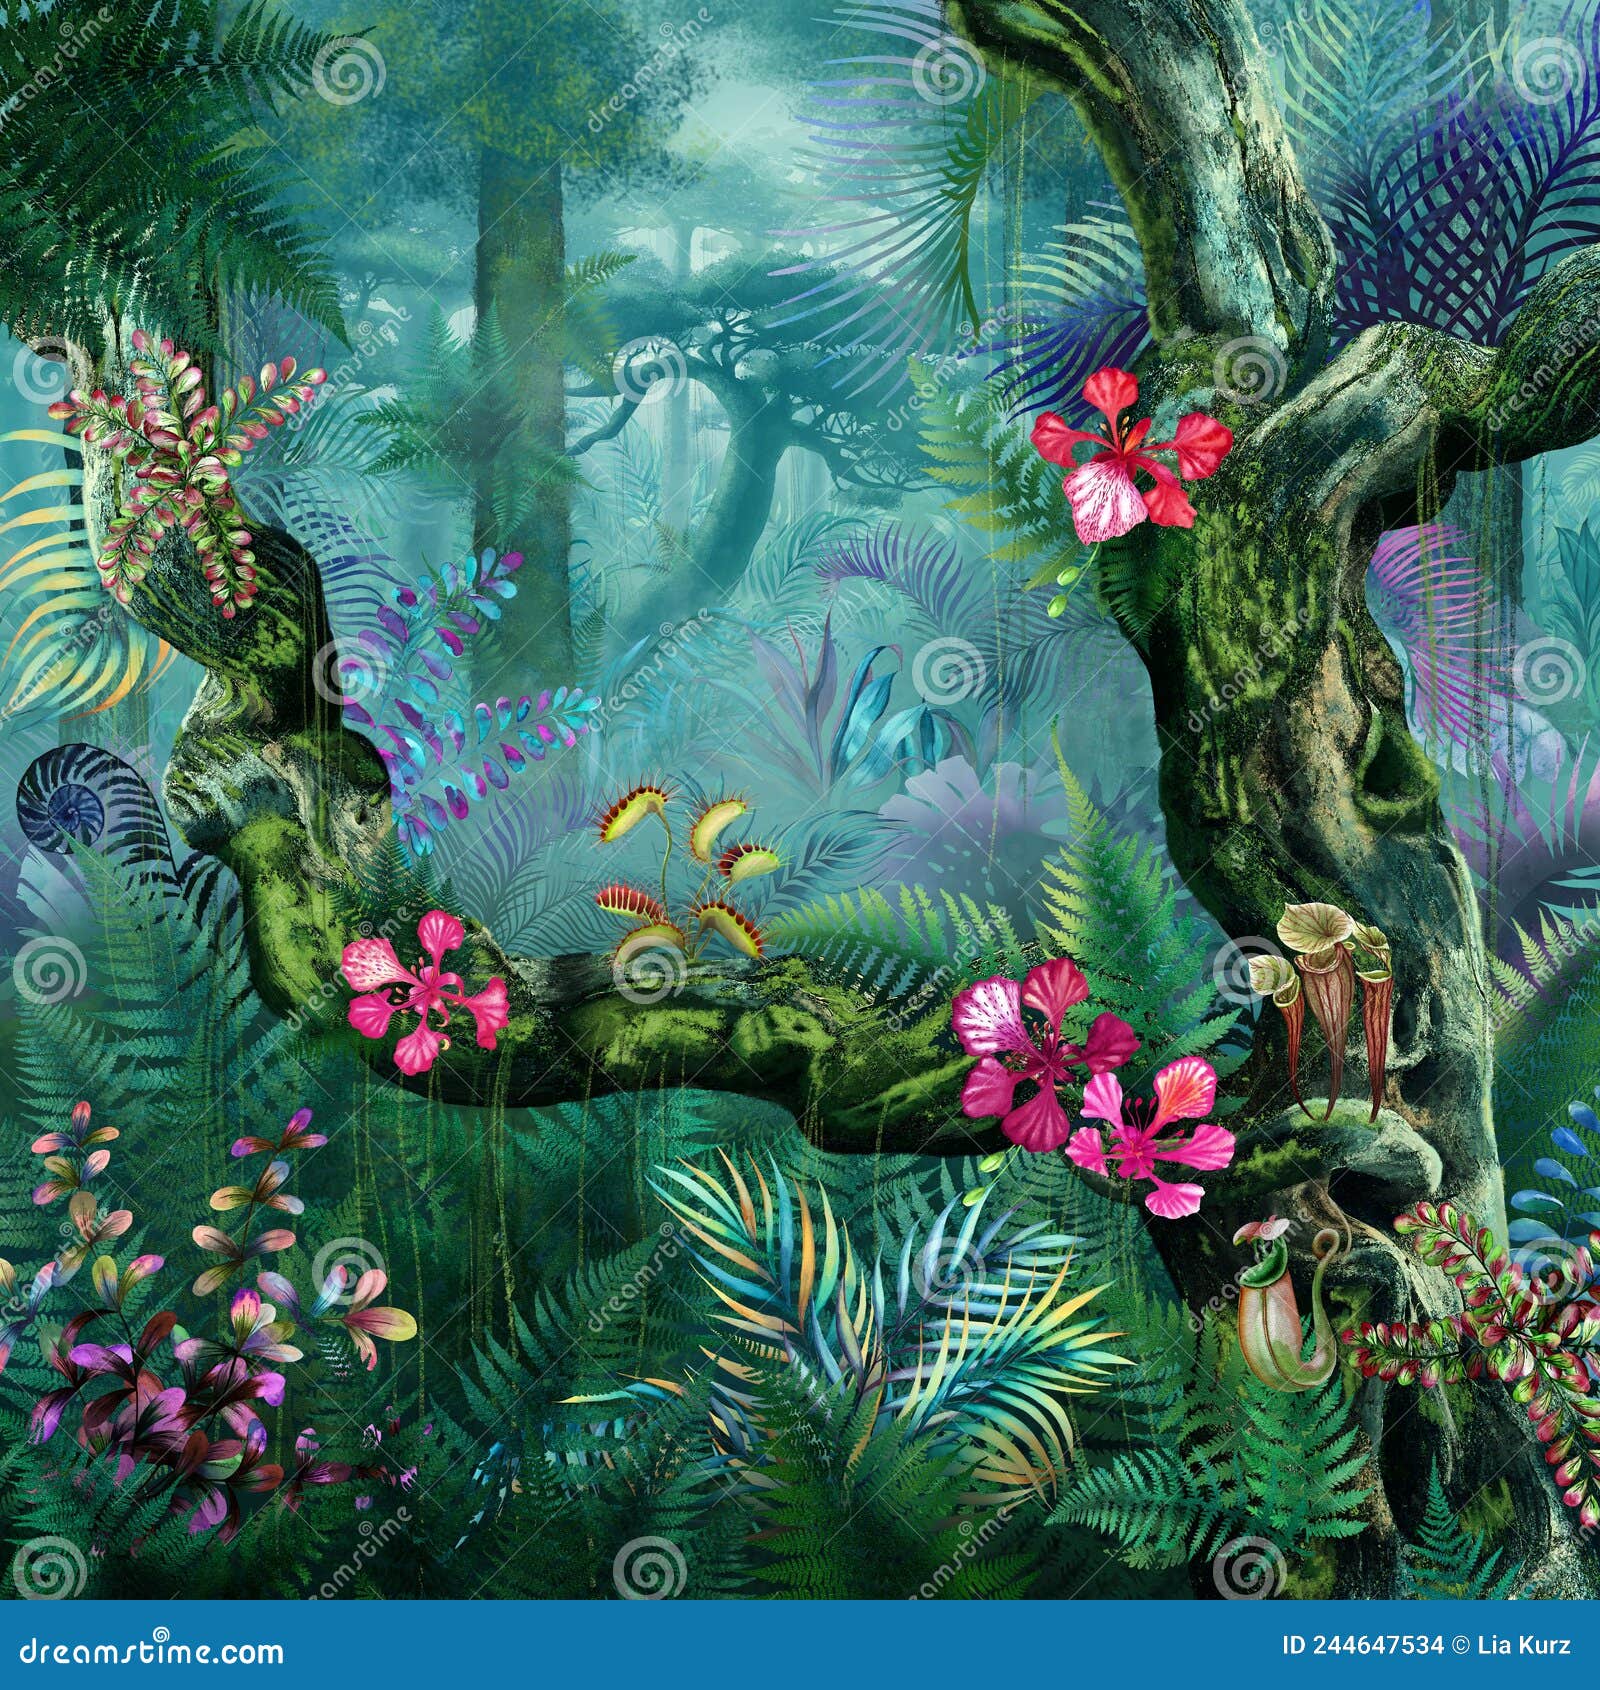 Tropical Fantasy Forest Illustration Elven Forest Background